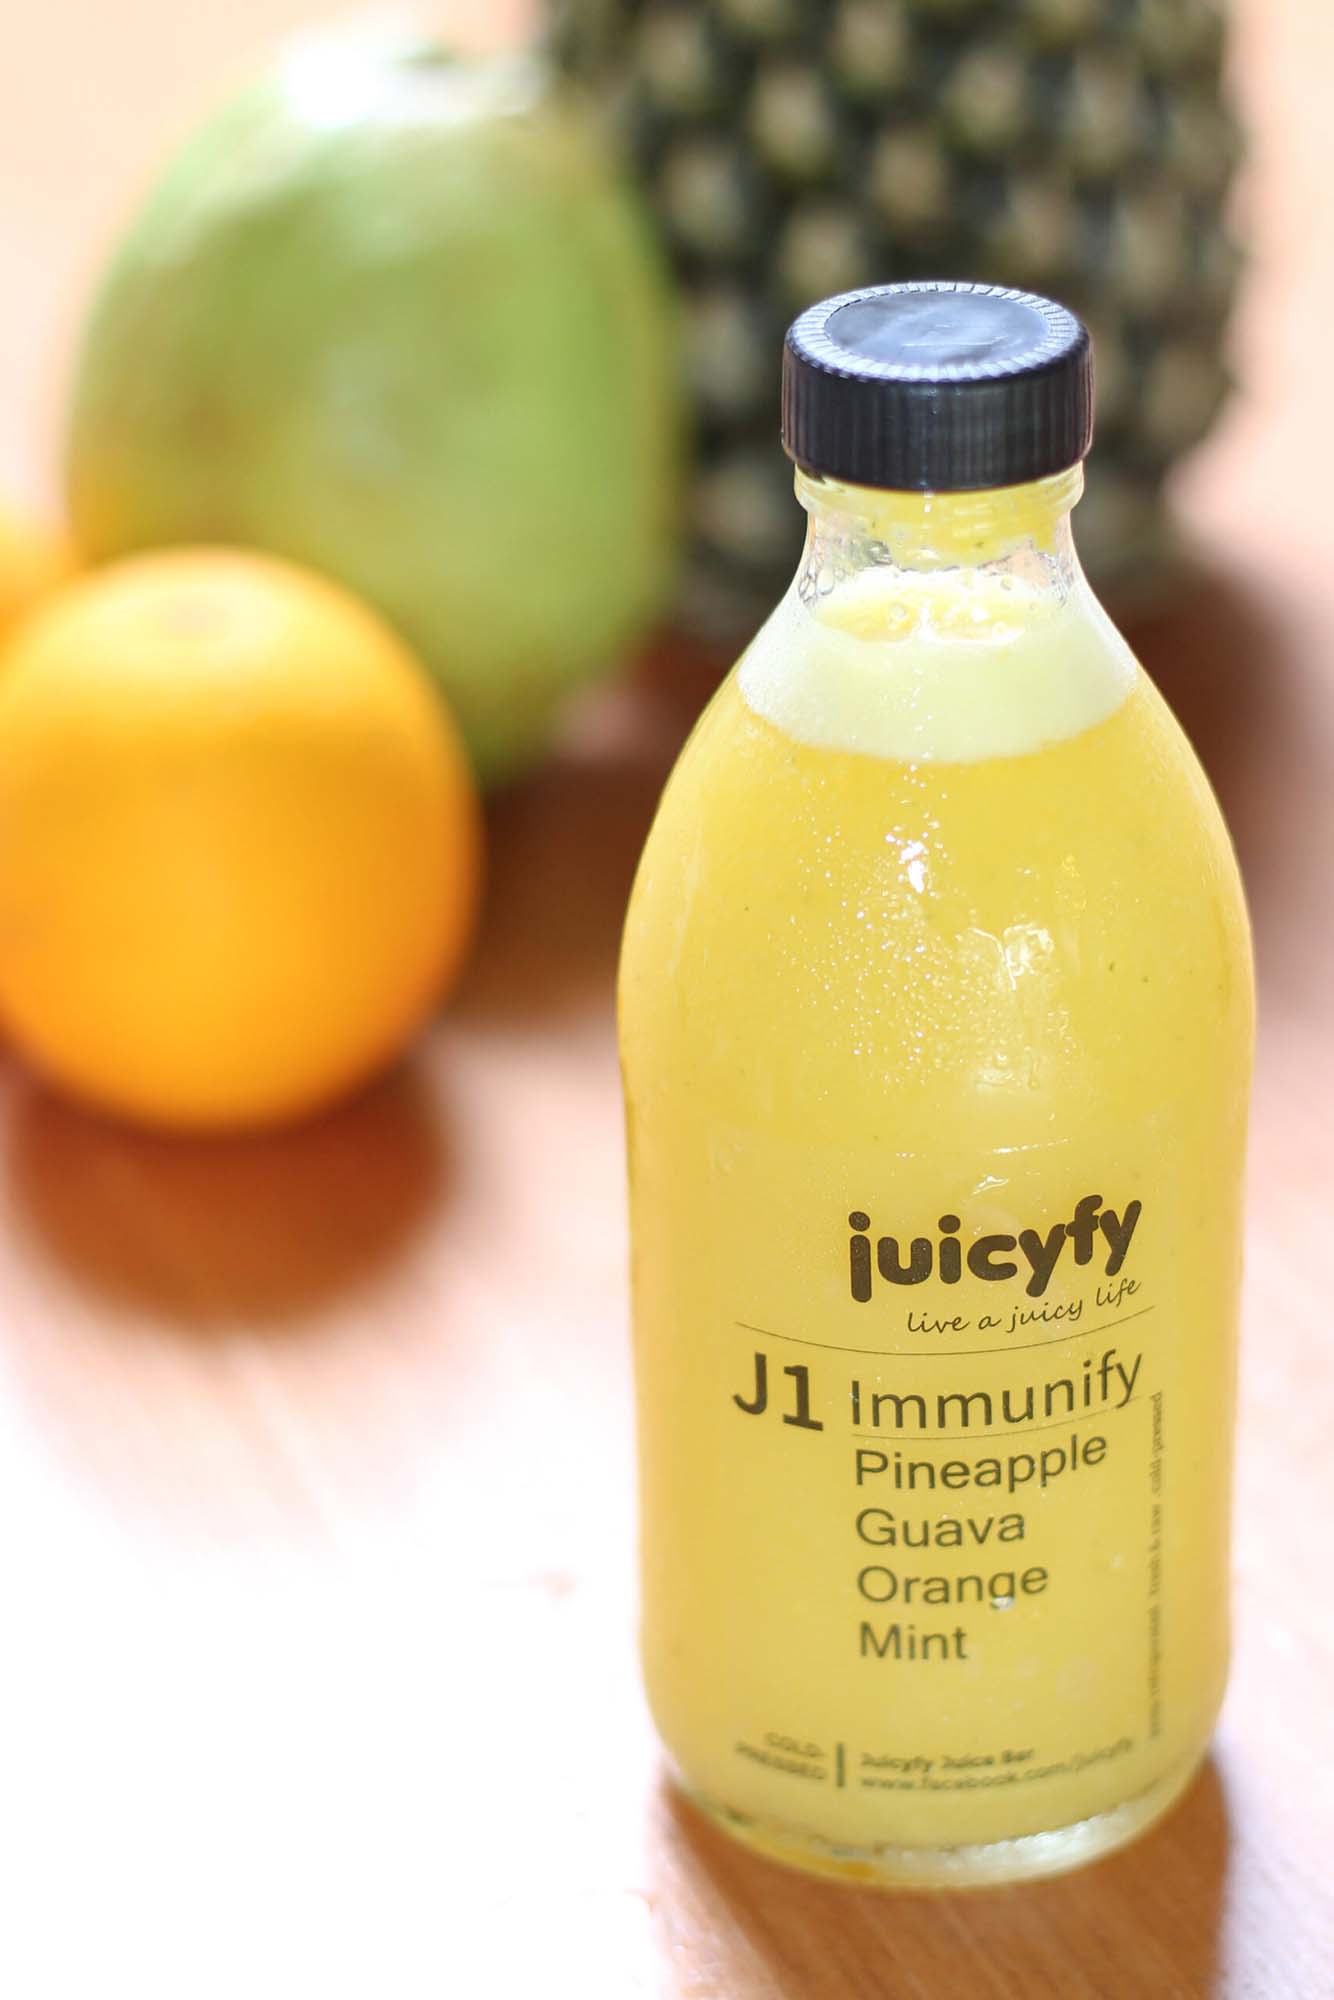 cafe juicyfy juice bar product j1 scaled